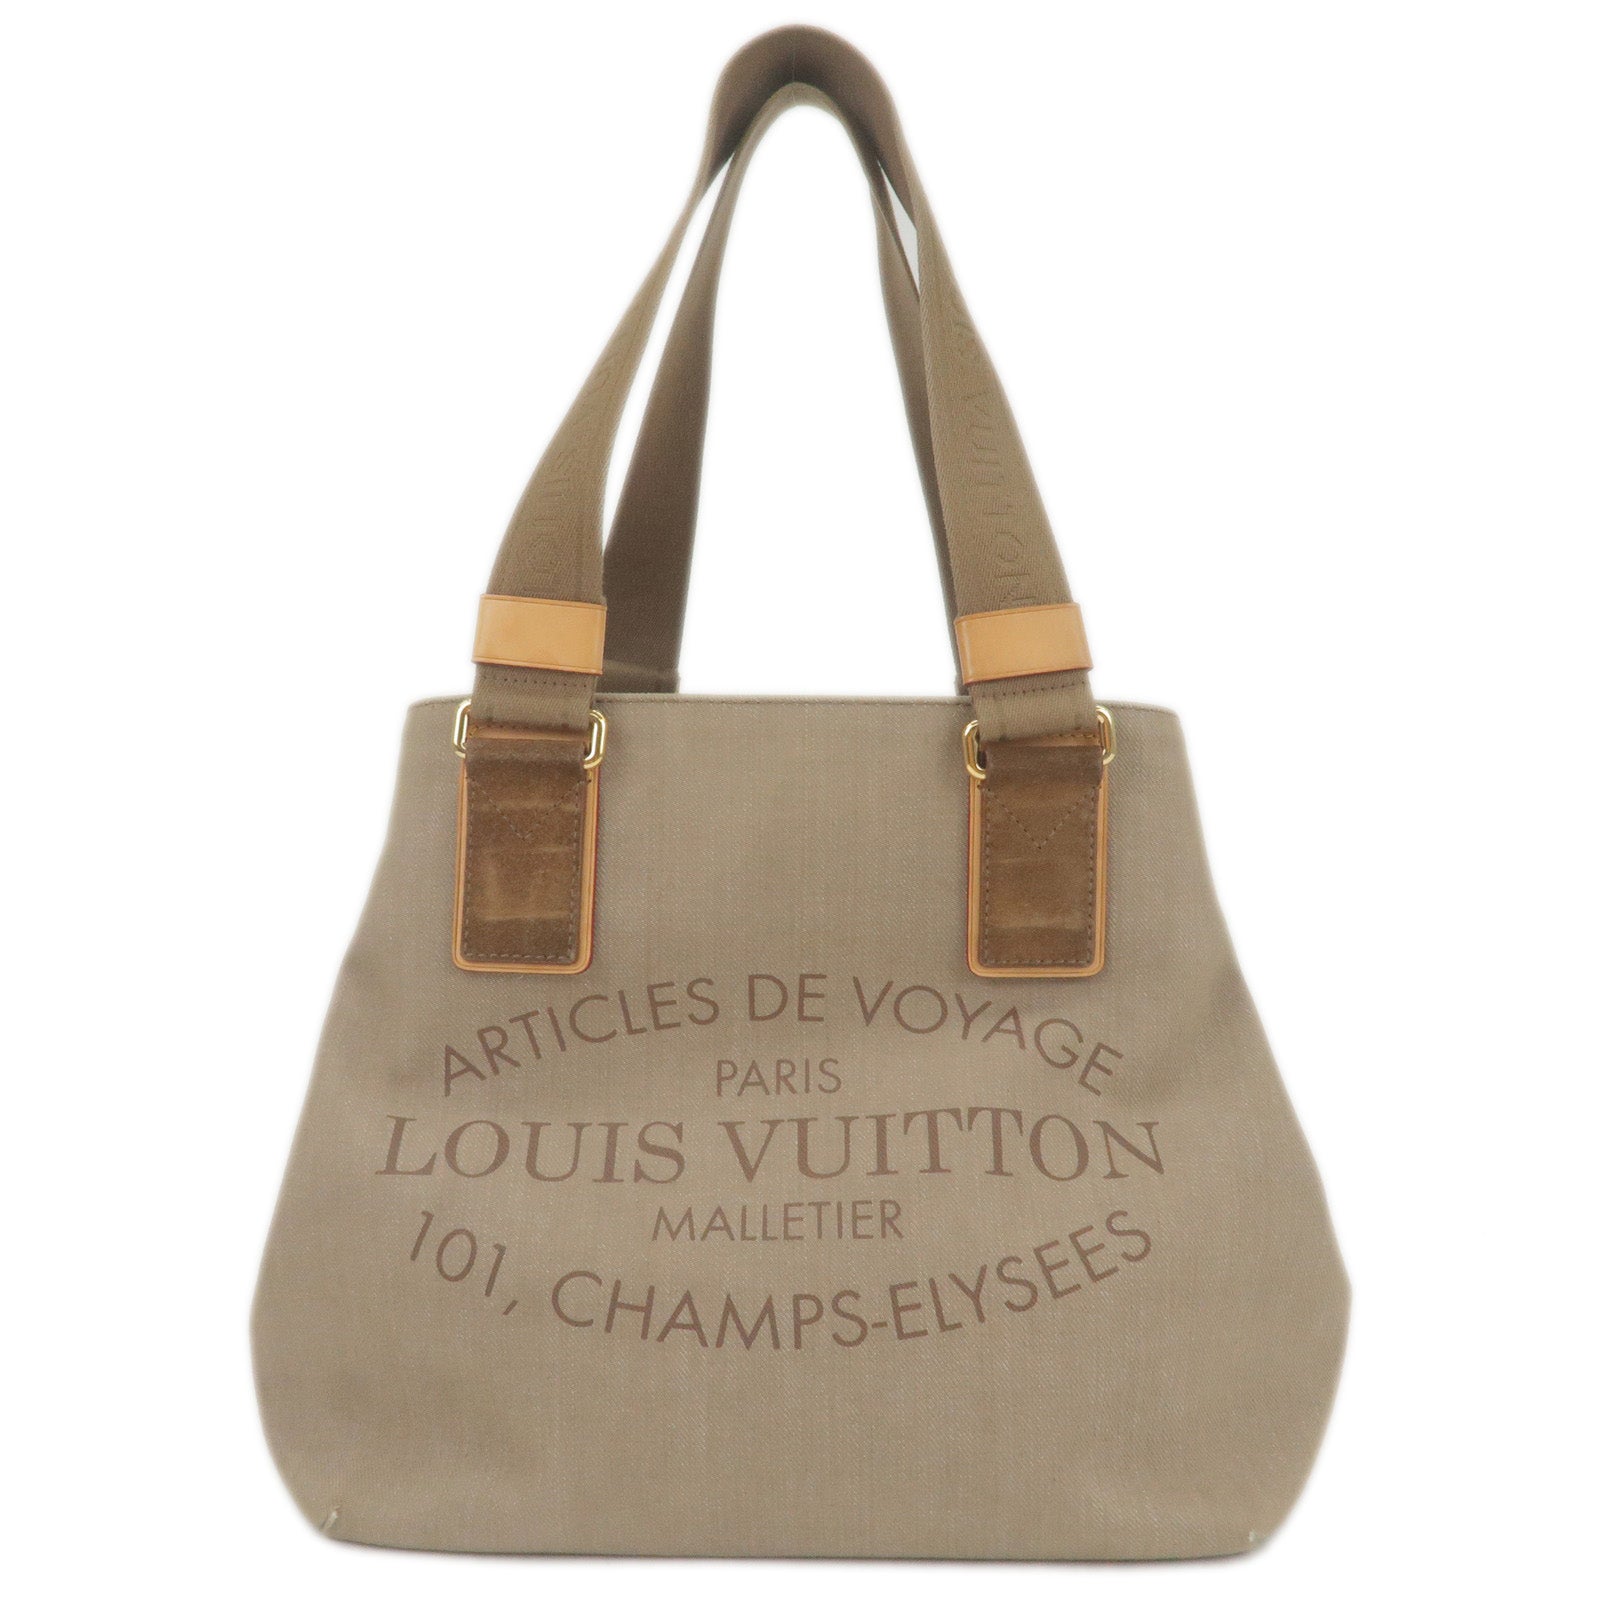 AuthenticLouis-Vuitton-Plein-Soleil-Cabas-PM-Tote-Bag-Beige-M94144